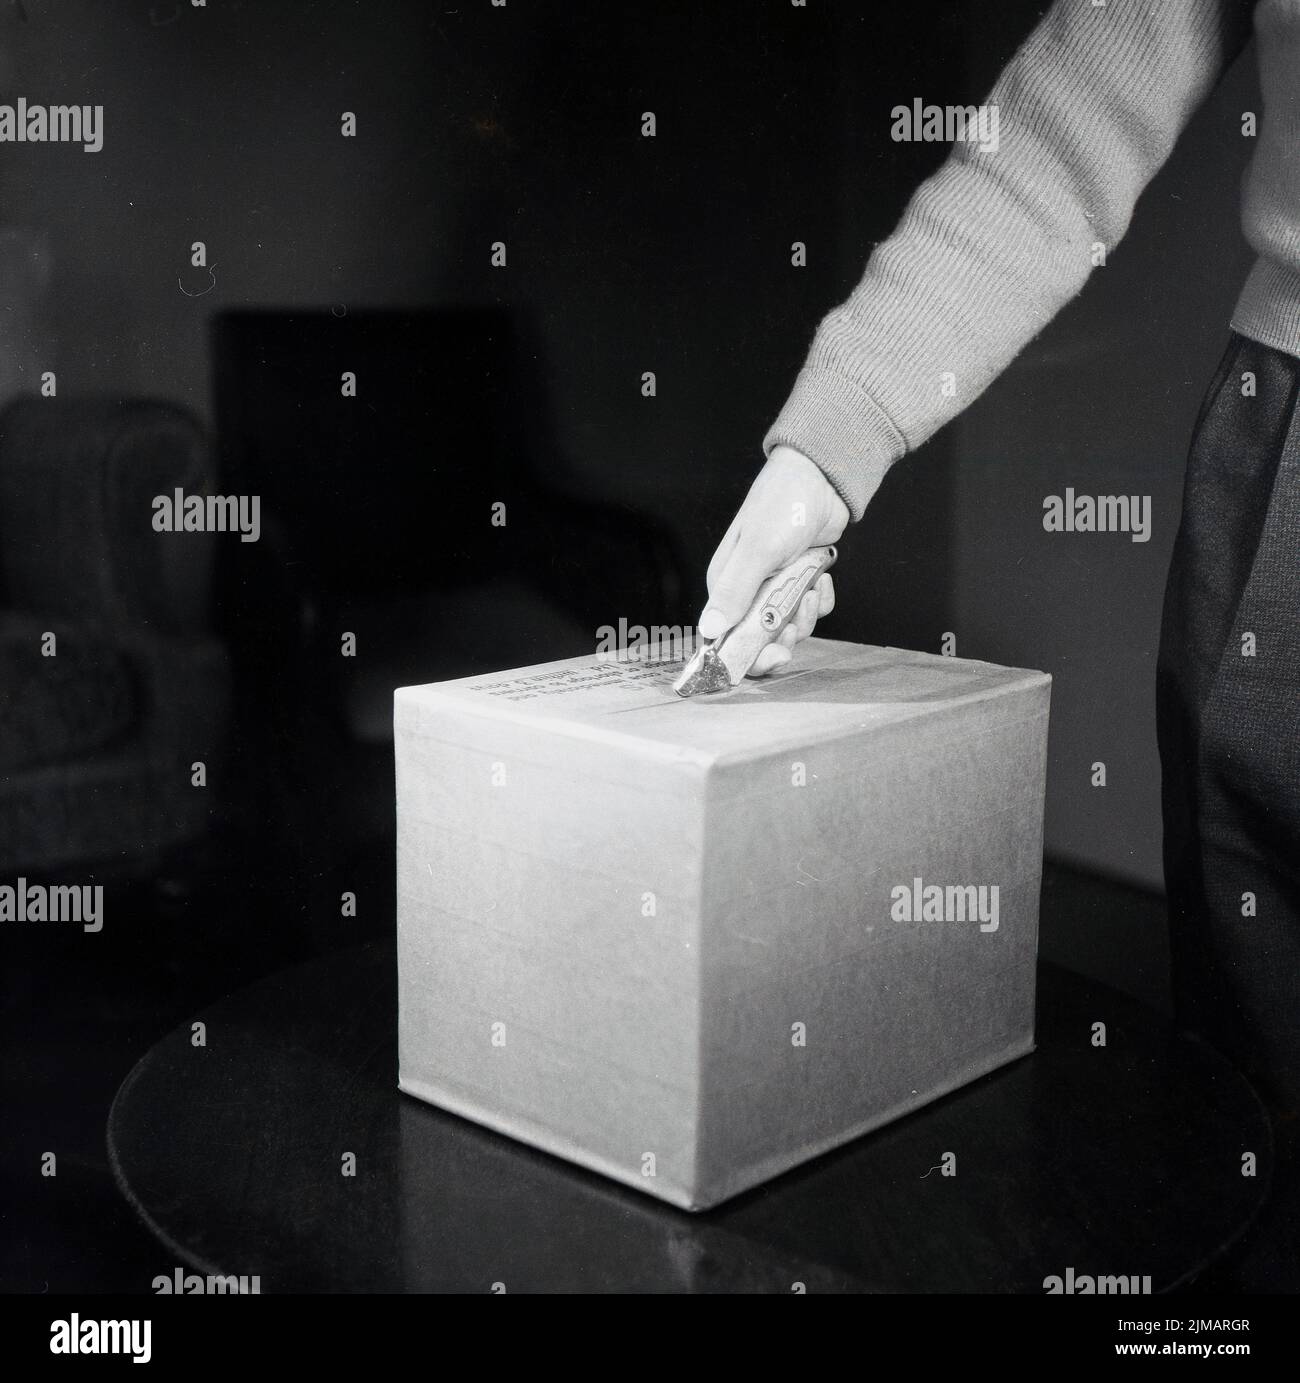 1950s, histórico, un hombre - con la mano y el antebrazo en el tiro - demostrando cómo abrir una caja de cartón con una herramienta de hoja de mango metálico, fabricada por Lewis. Este cuchillo de uso general era conocido como un 'cortador de cajas'. Foto de stock